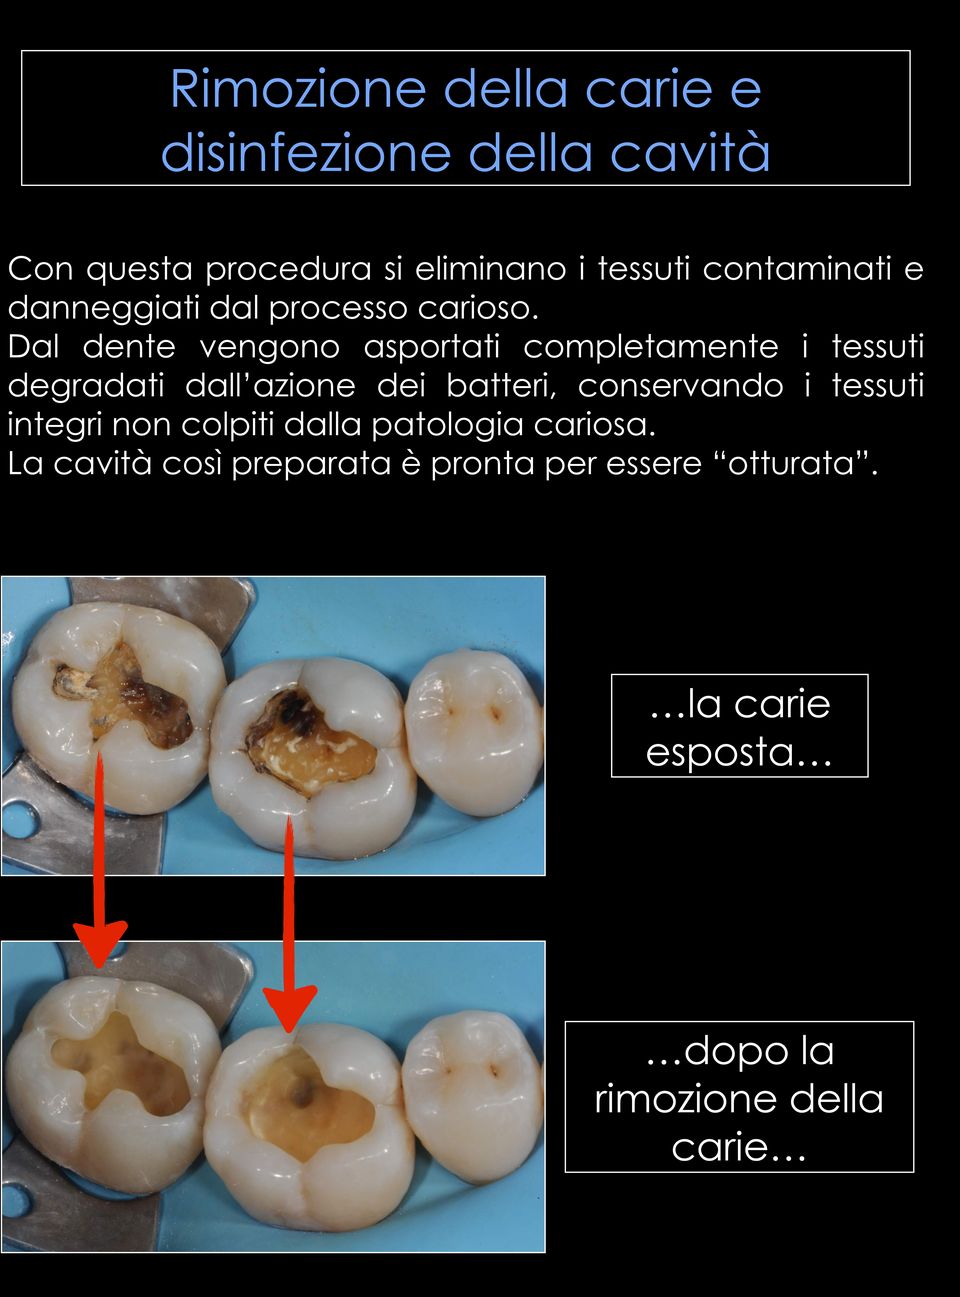 Dal dente vengono asportati completamente i tessuti degradati dall azione dei batteri, conservando